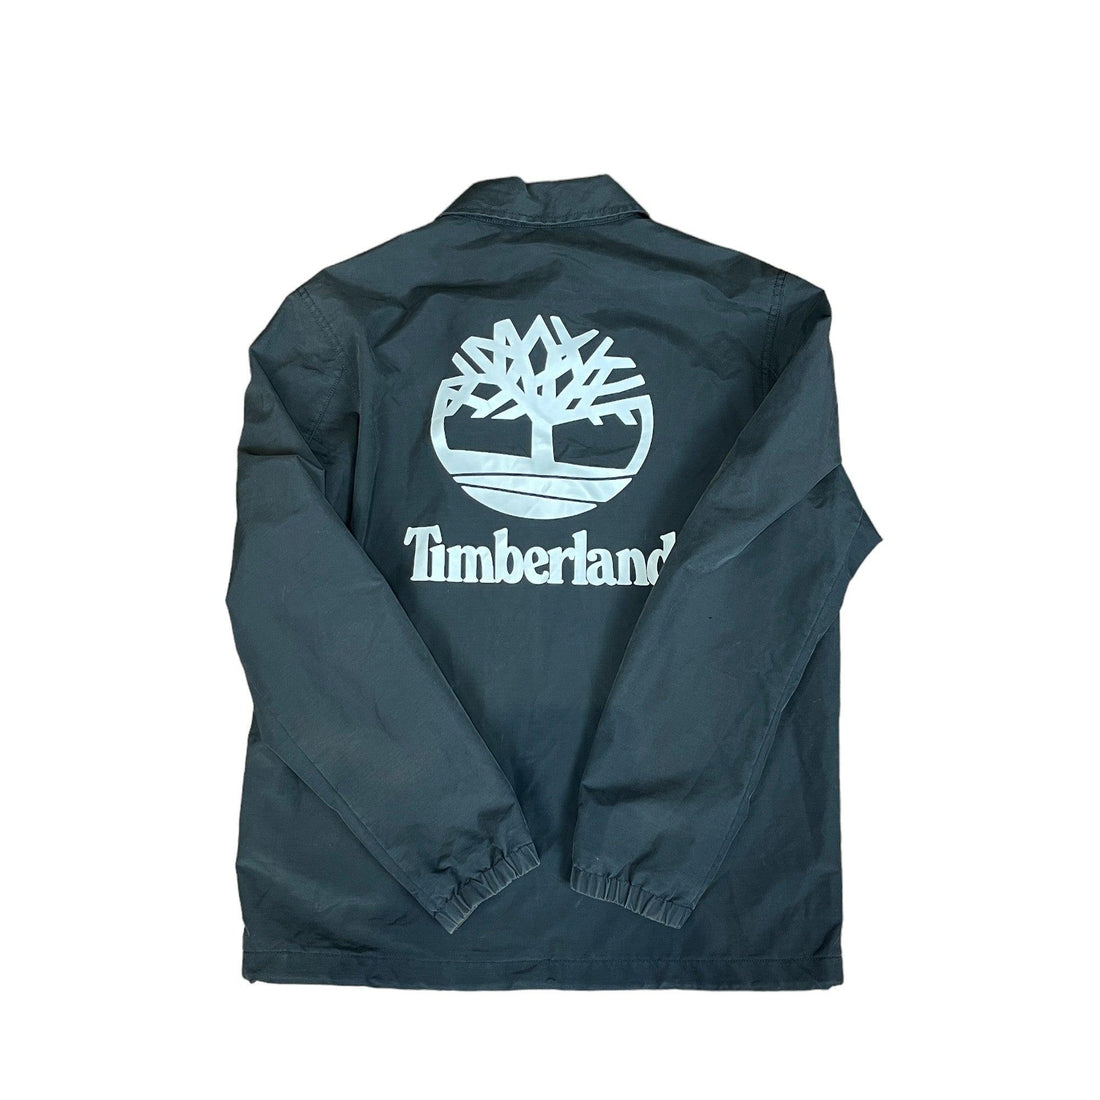 Vintage 90s Black Timberland Jacket - Medium - The Streetwear Studio